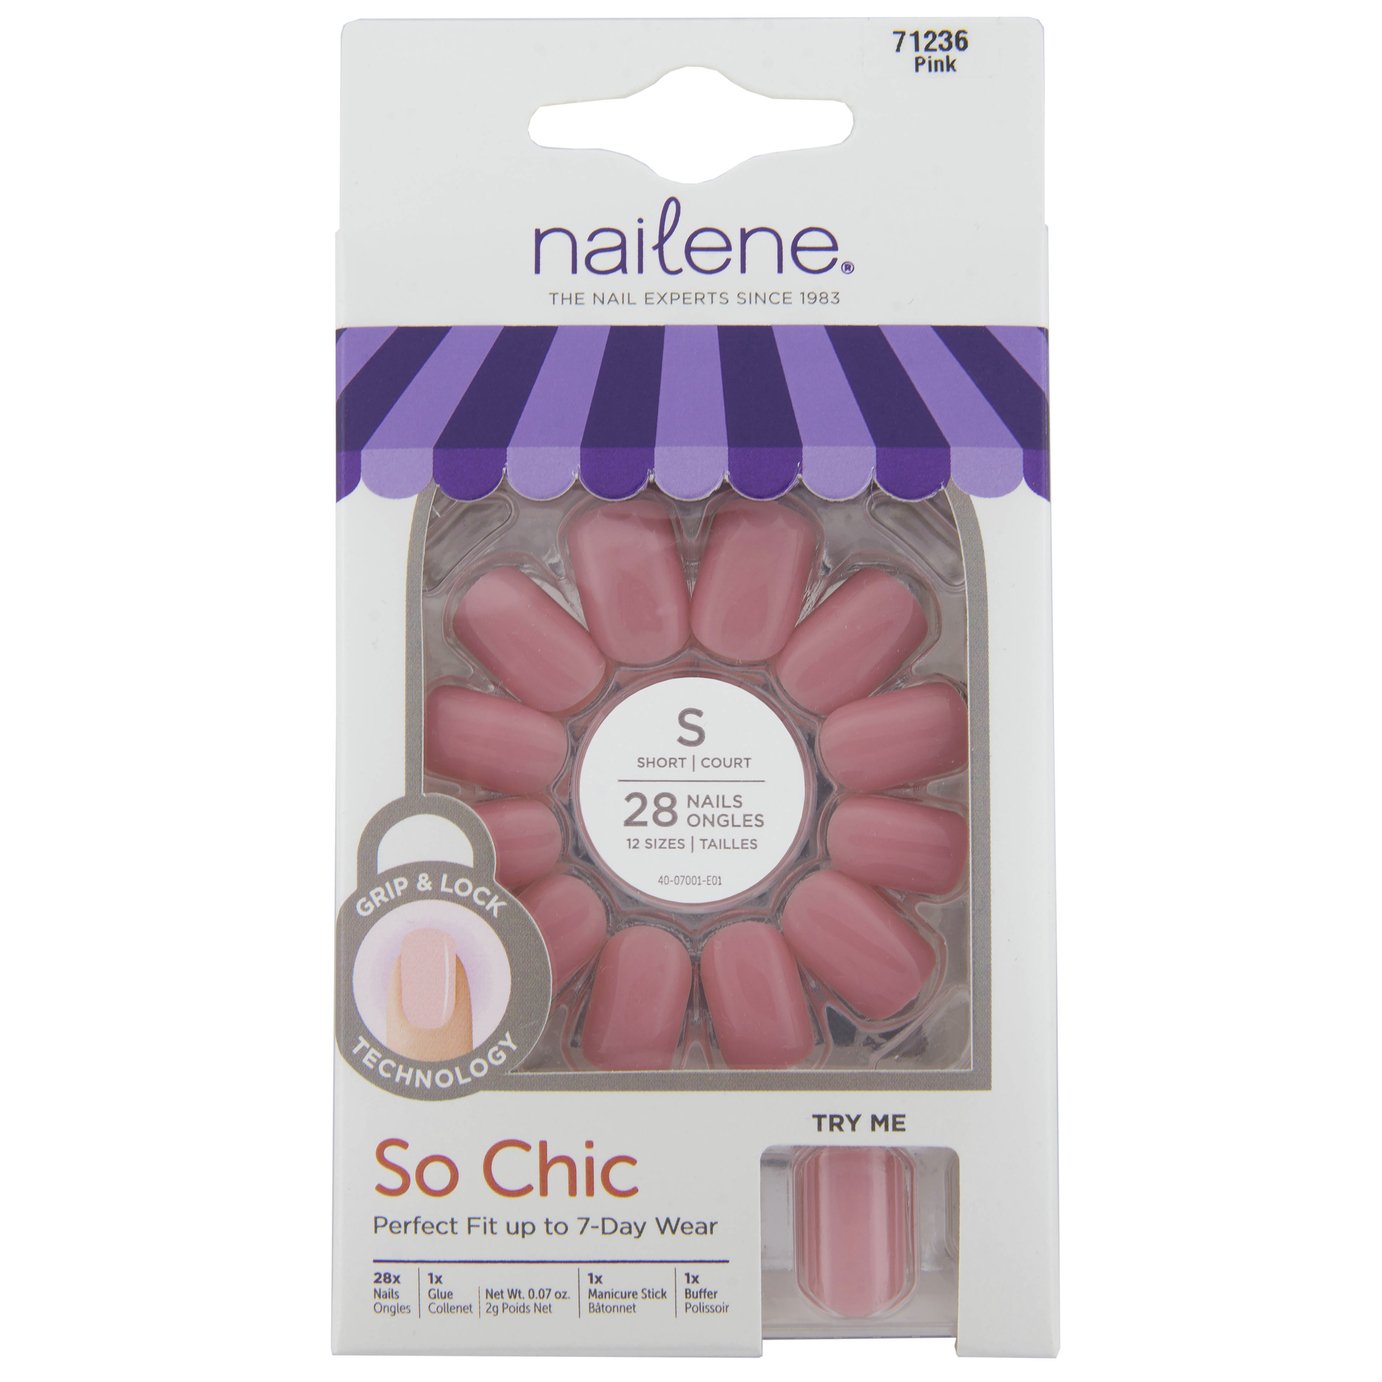 Nailene So Chic Gel Nails - Pink Gloss 28